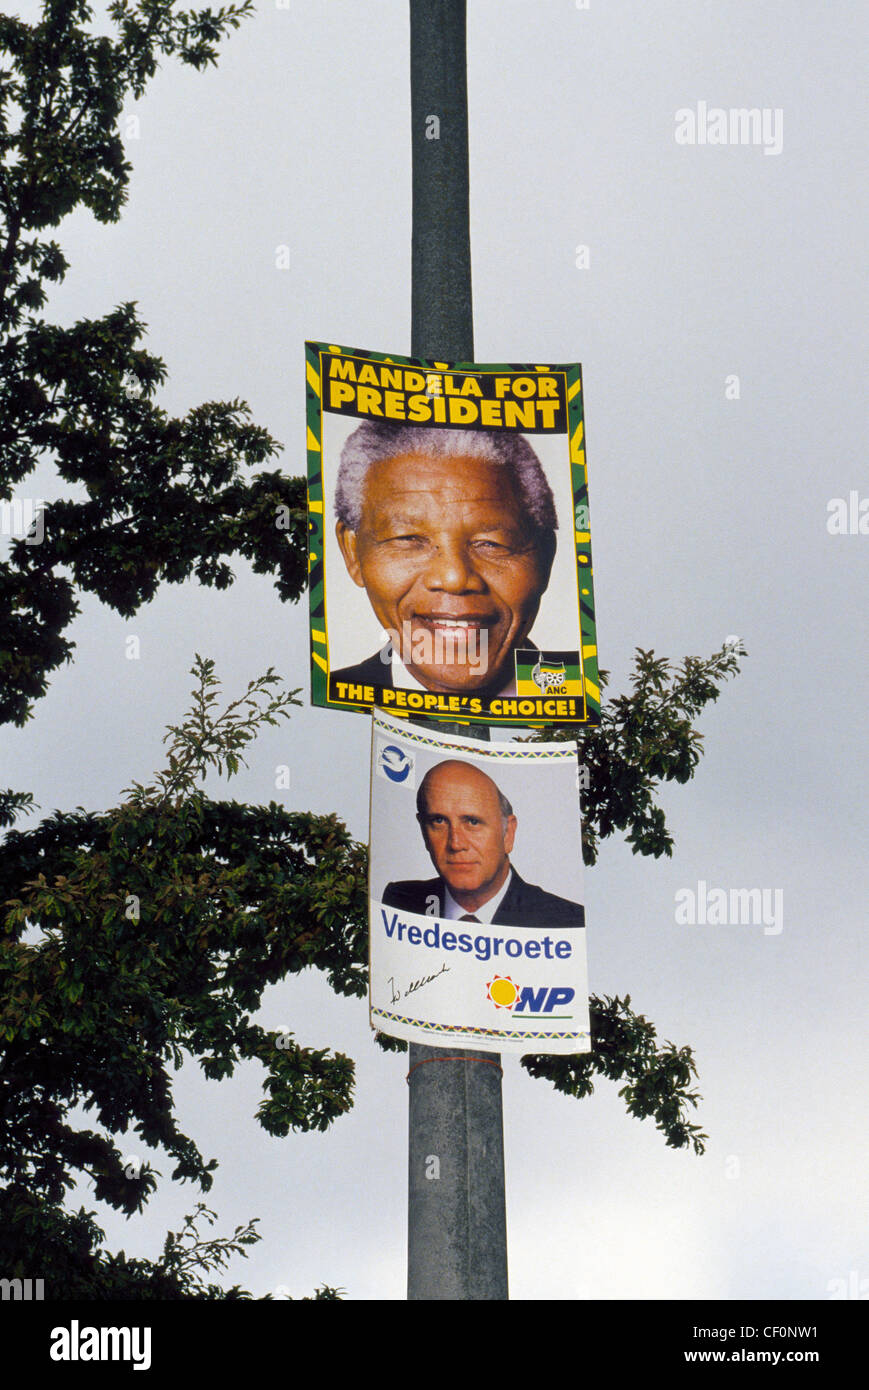 Activista negro Nelson Mandela desafió F. W. de Klerk en Sudáfrica las primeras elecciones multirraciales en 1994. Mandela ganó. Foto de stock